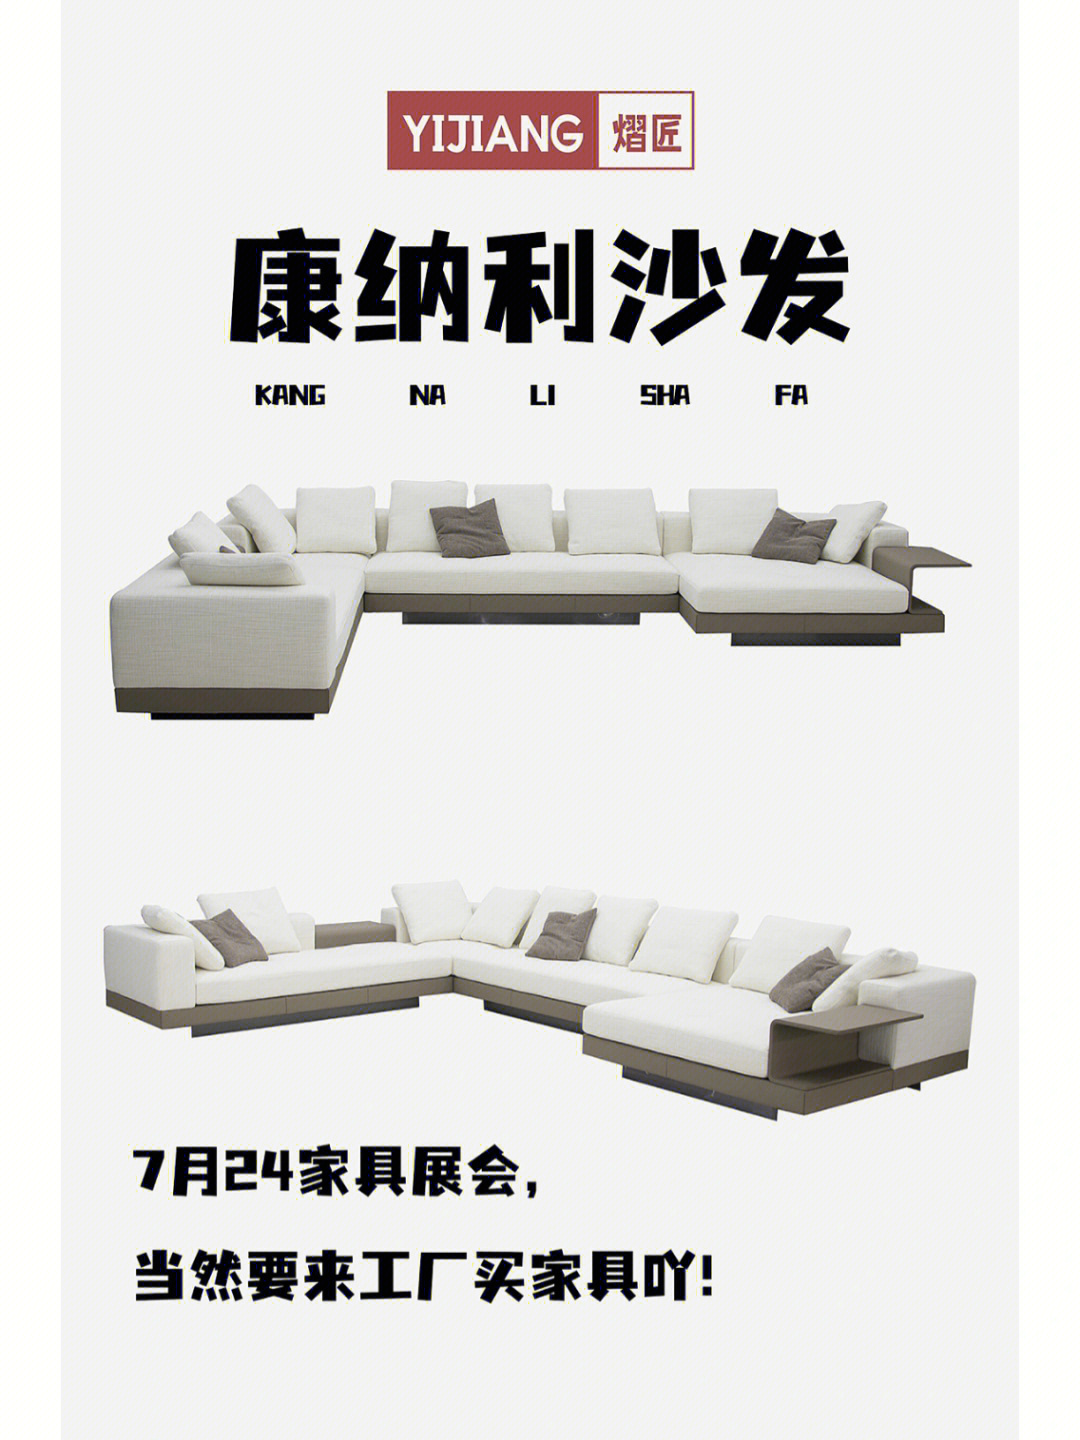 压力山大,各种沙发任君挑选9515 米诺提是一家意大利公司,是国际